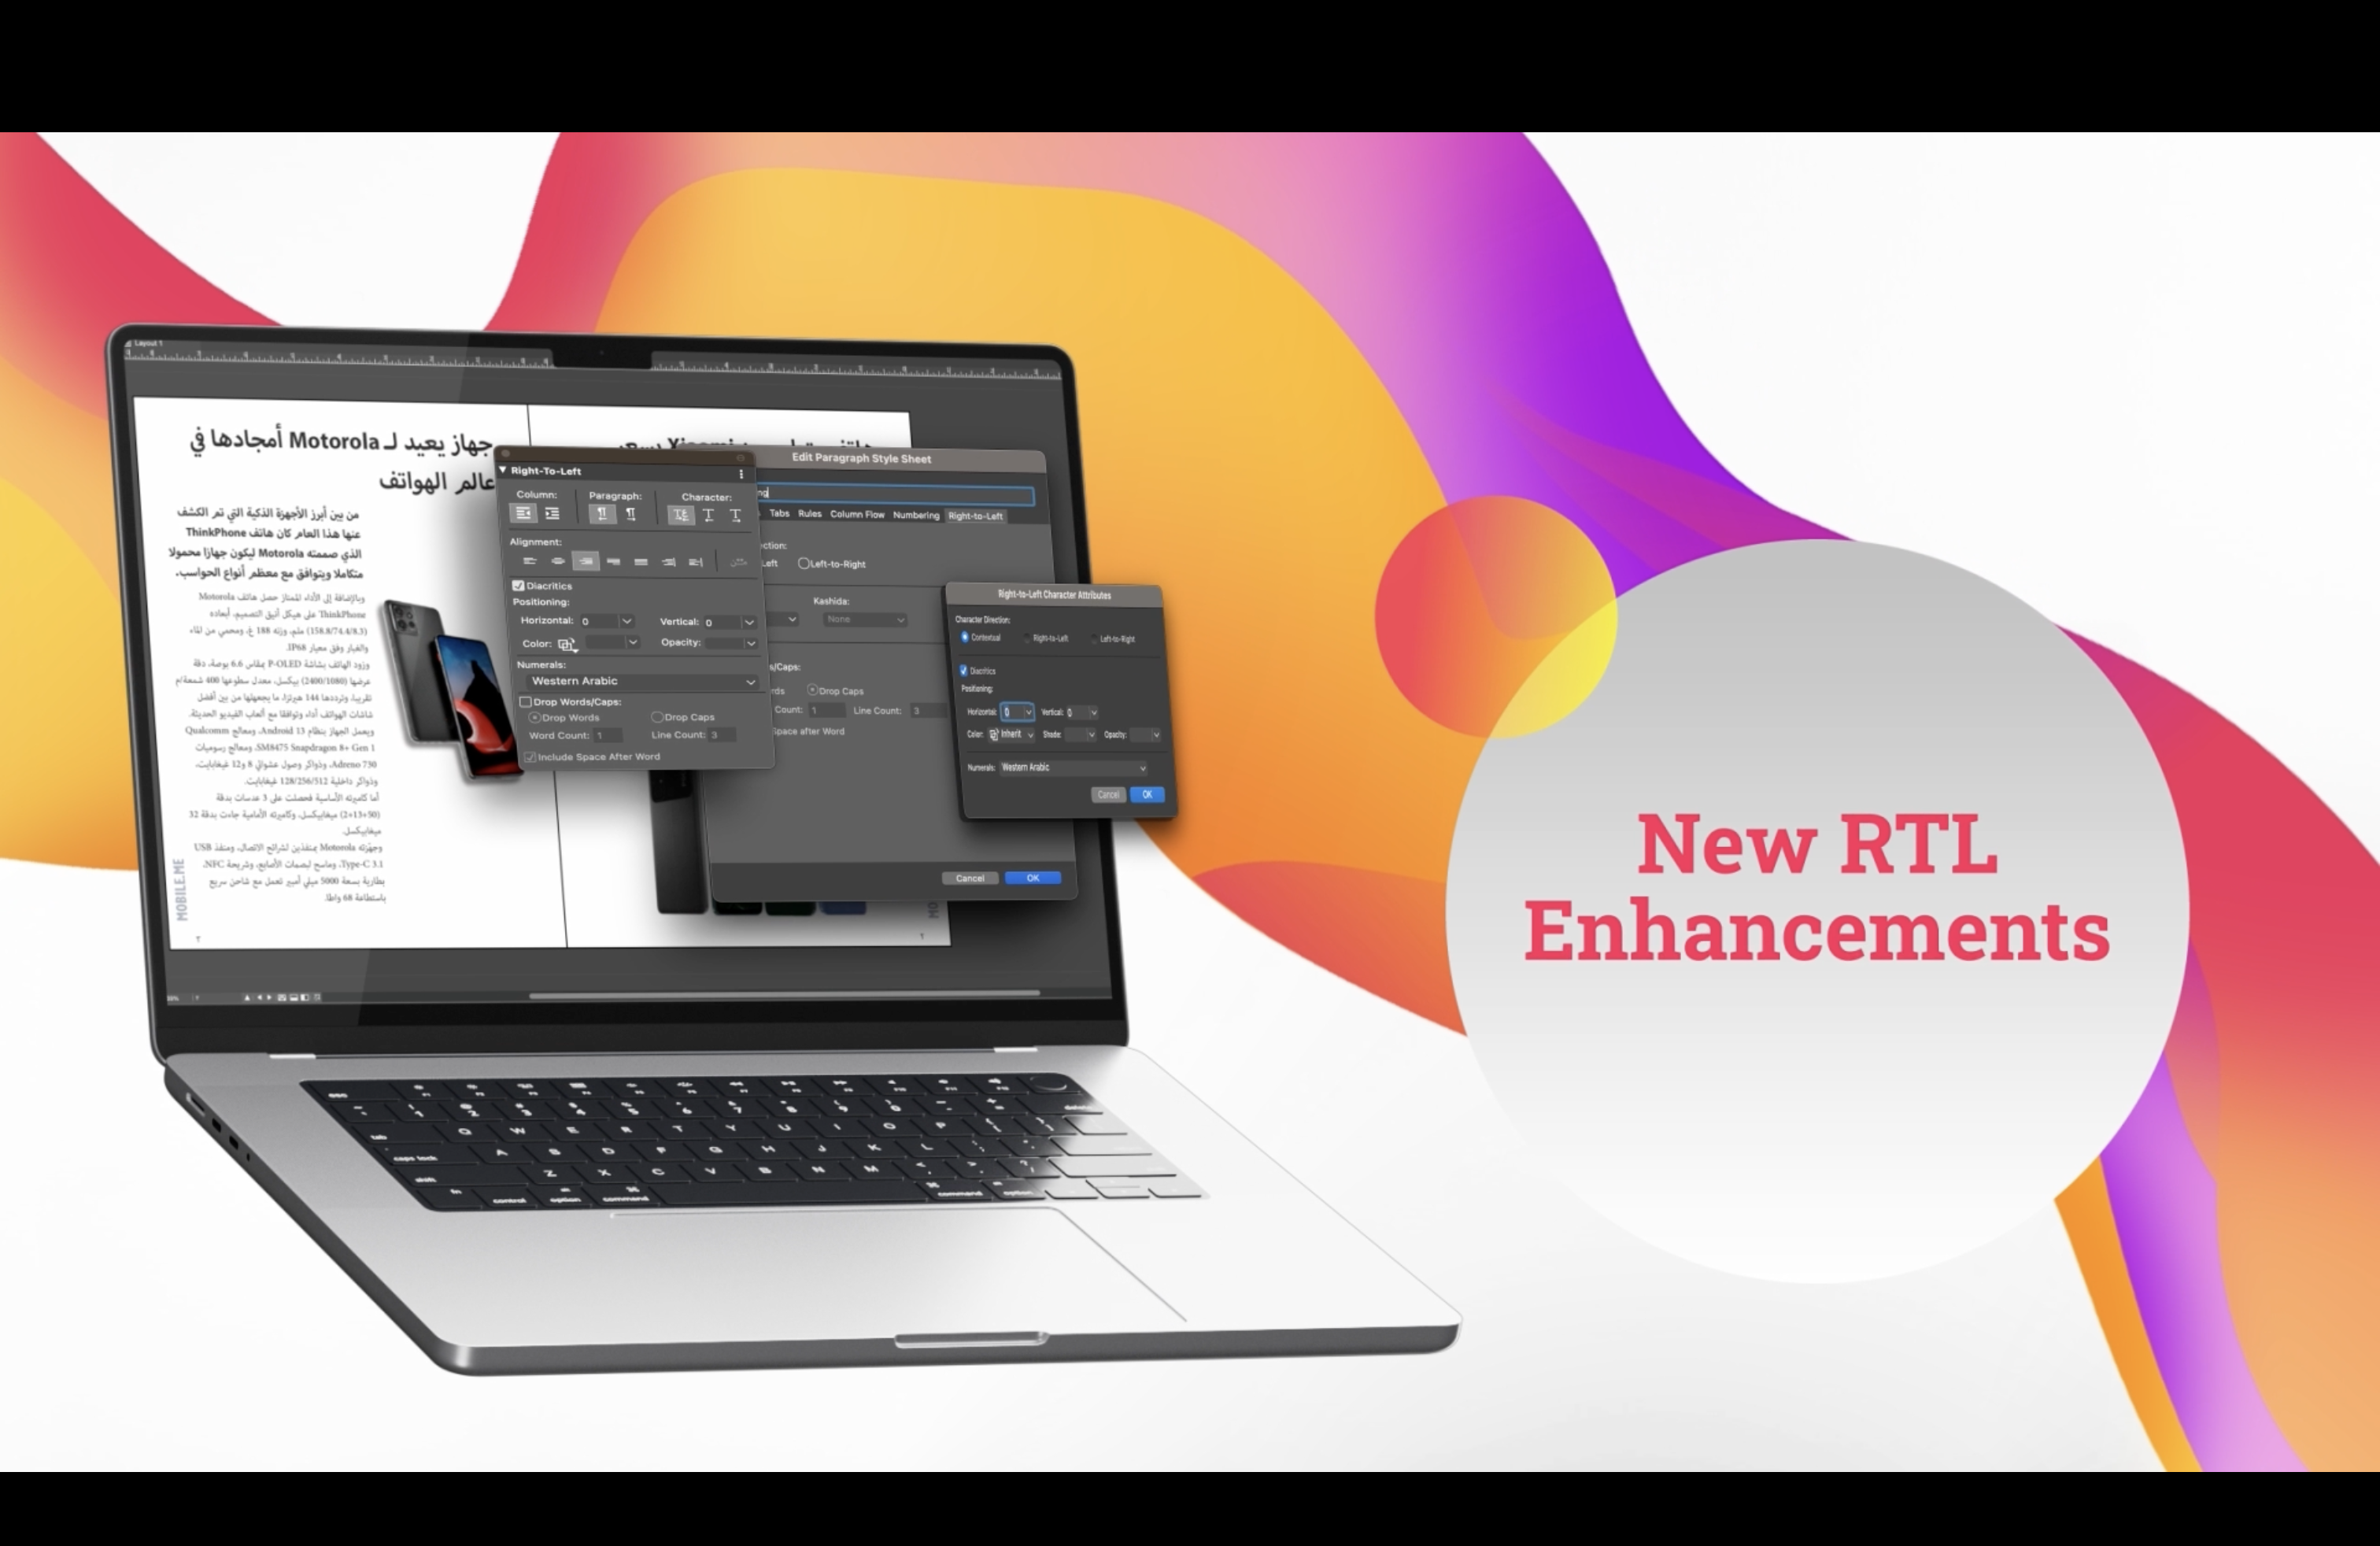 QuarkXPress Software - New RTL Enhancements